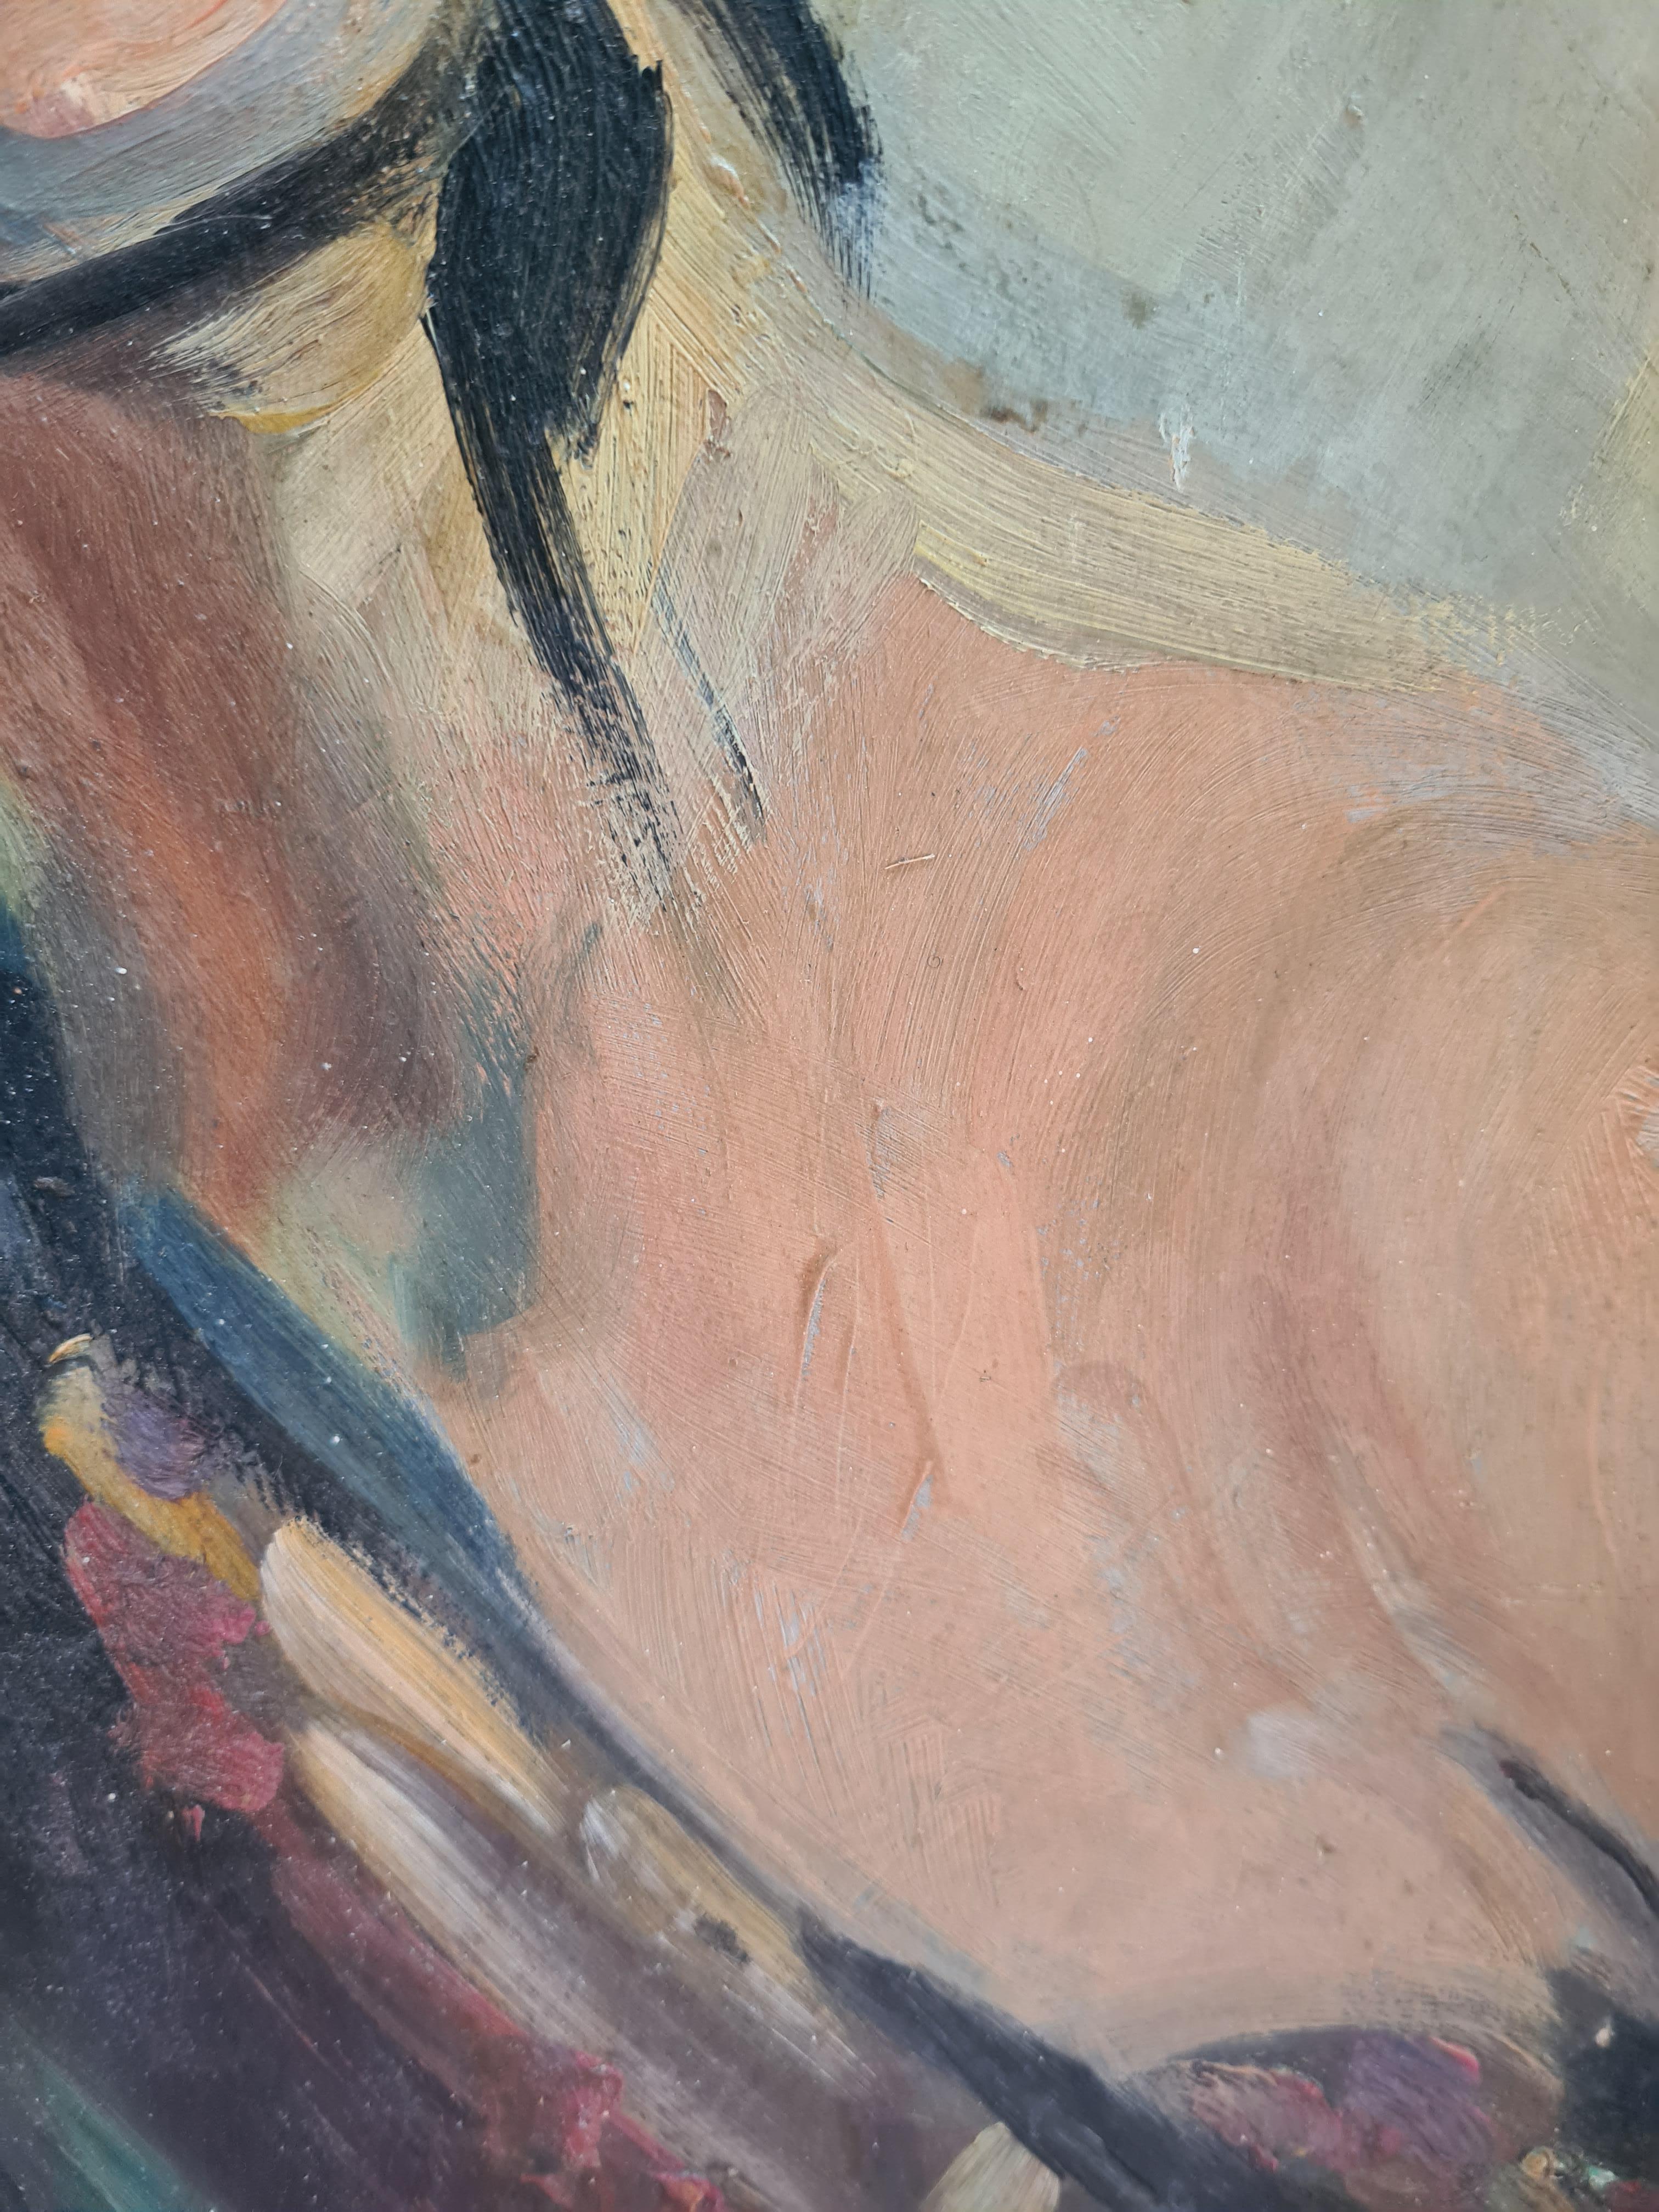 Portrait de société à l'huile sur carton du début du 20e siècle par l'artiste française Rose Teitgen-Obeurer. Signé en haut à gauche.

Portrait charmant et plein de caractère d'une dame élégante portant un chapeau et une robe de style. Il s'agit